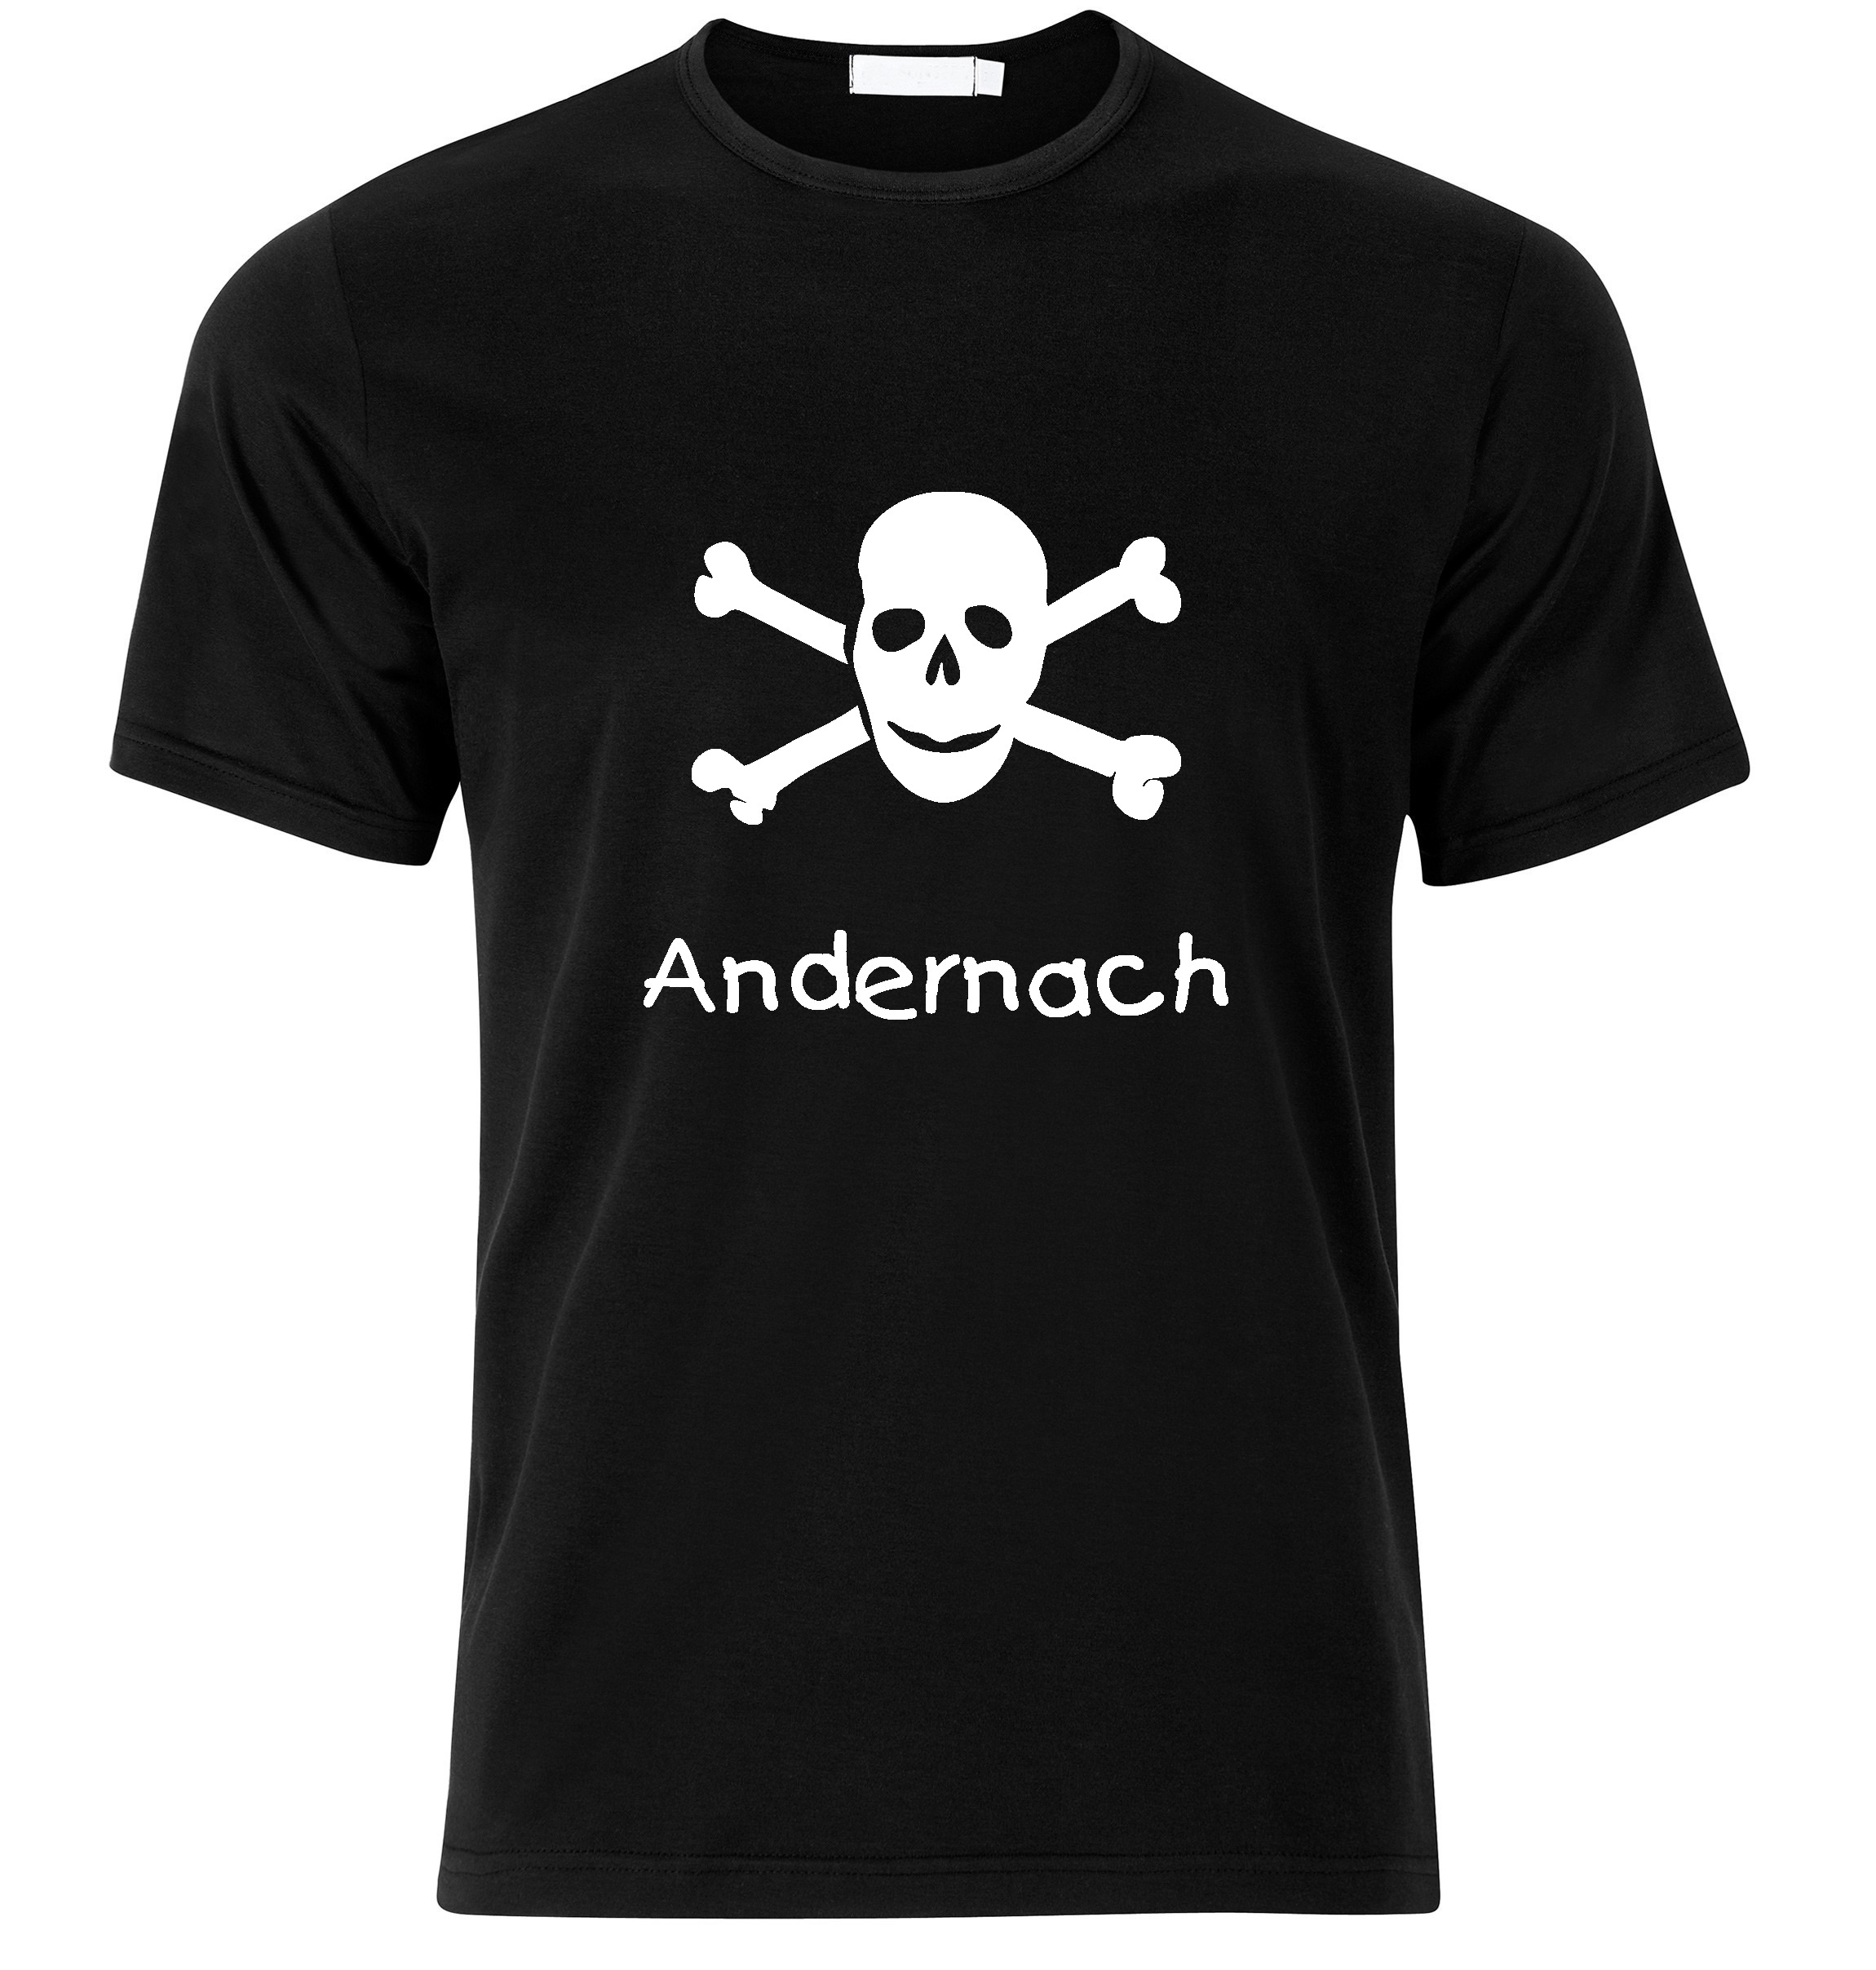 T-Shirt Andernach Jolly Roger, Totenkopf